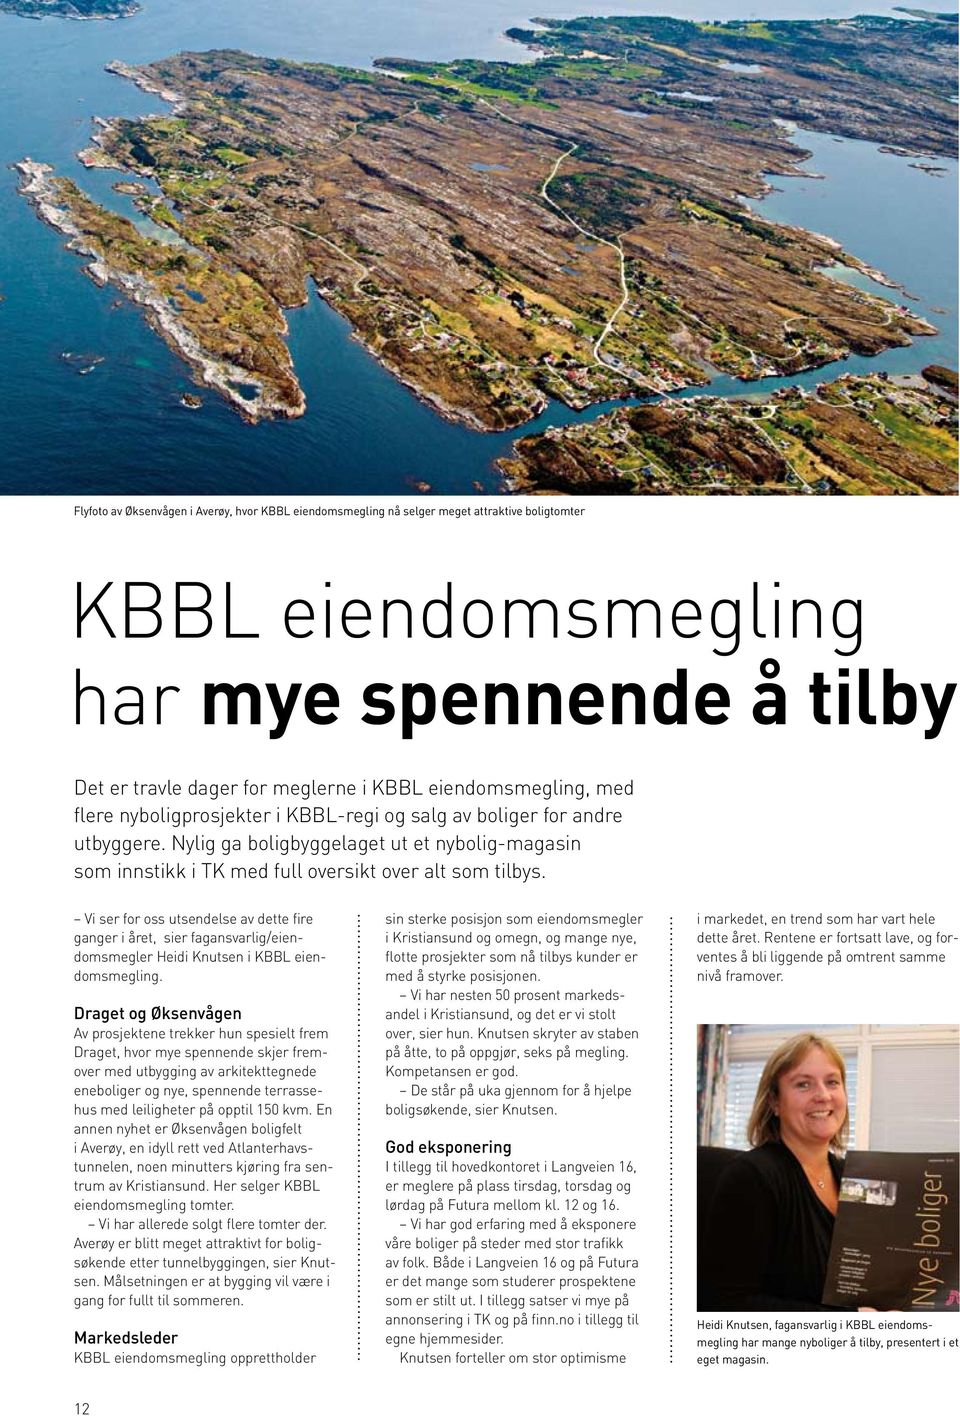 Vi ser for oss utsendelse av dette fire ganger i året, sier fagansvarlig/eiendomsmegler Heidi Knutsen i KBBL eiendomsmegling.